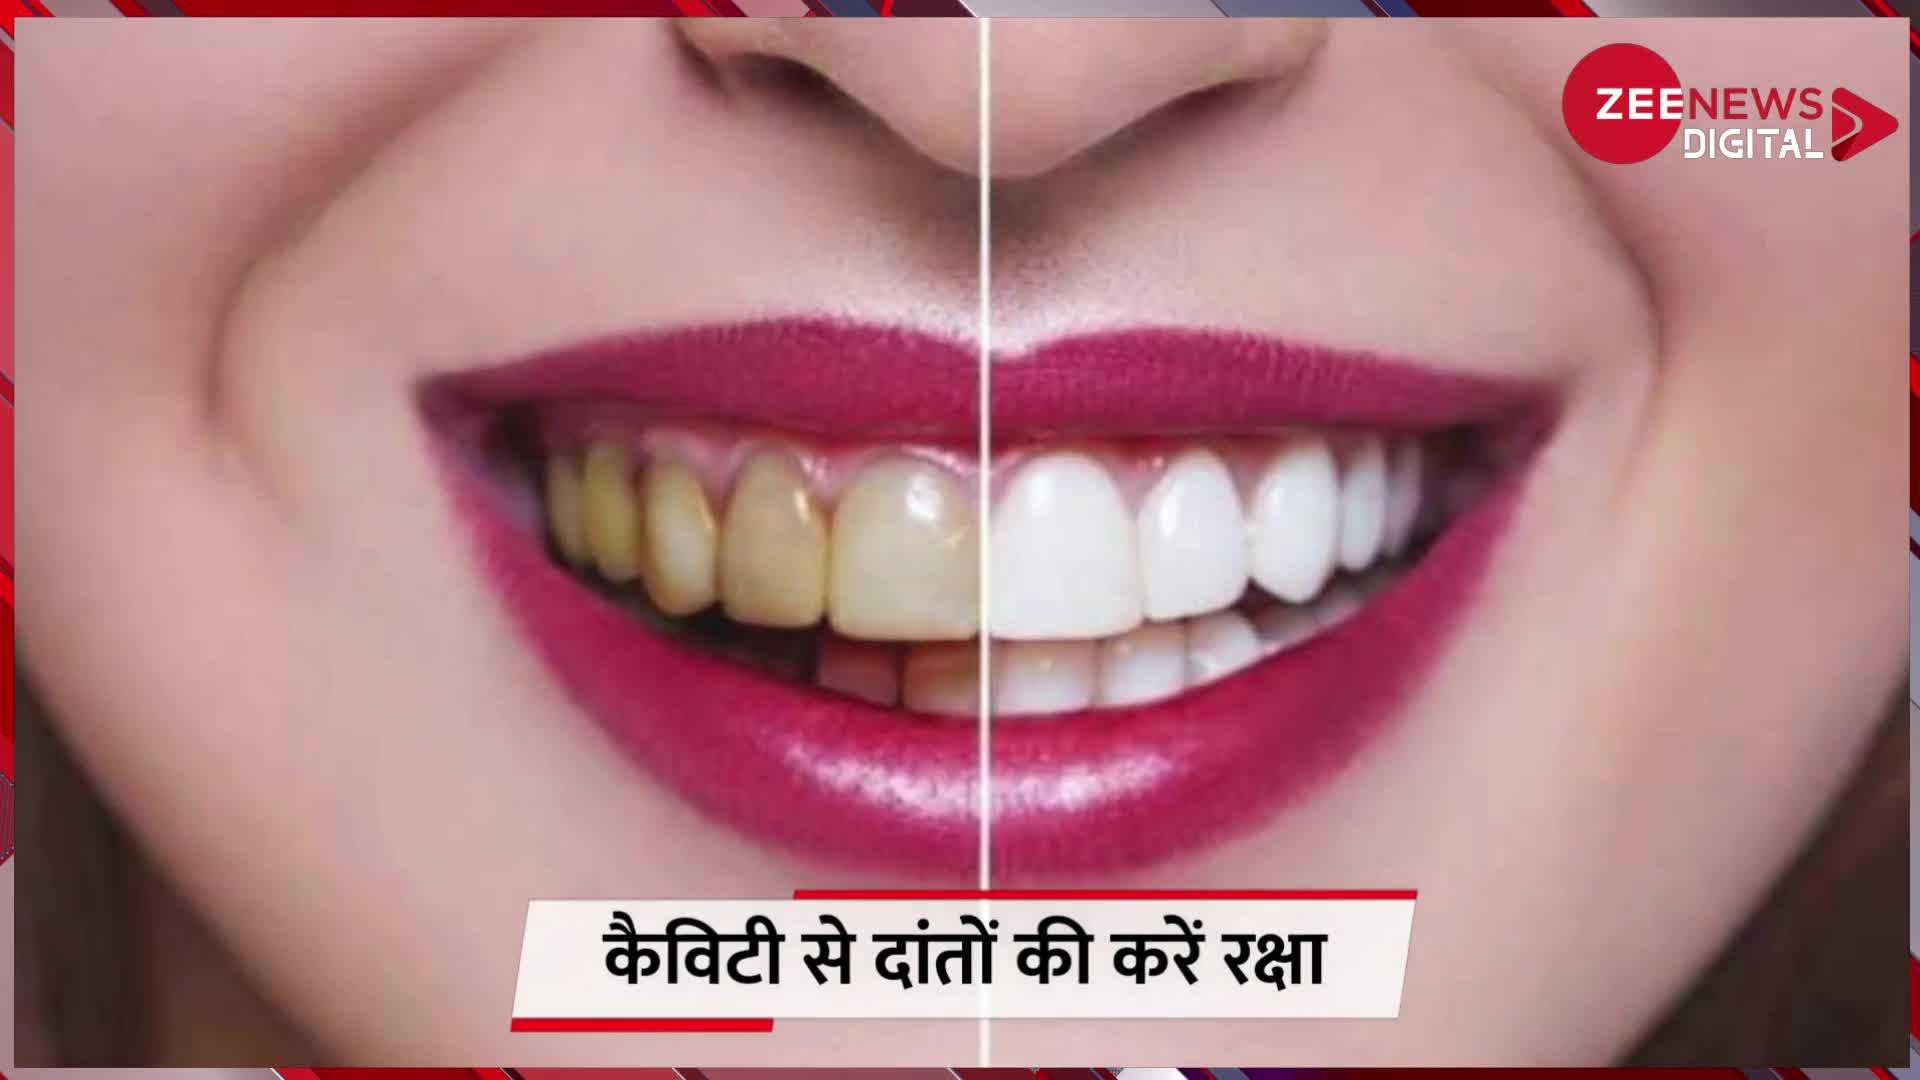 Teeth Cavity: दांतों की सड़न की दुश्मन हैं ये चीजें, कैविटी का नहीं रहता कोई निशान